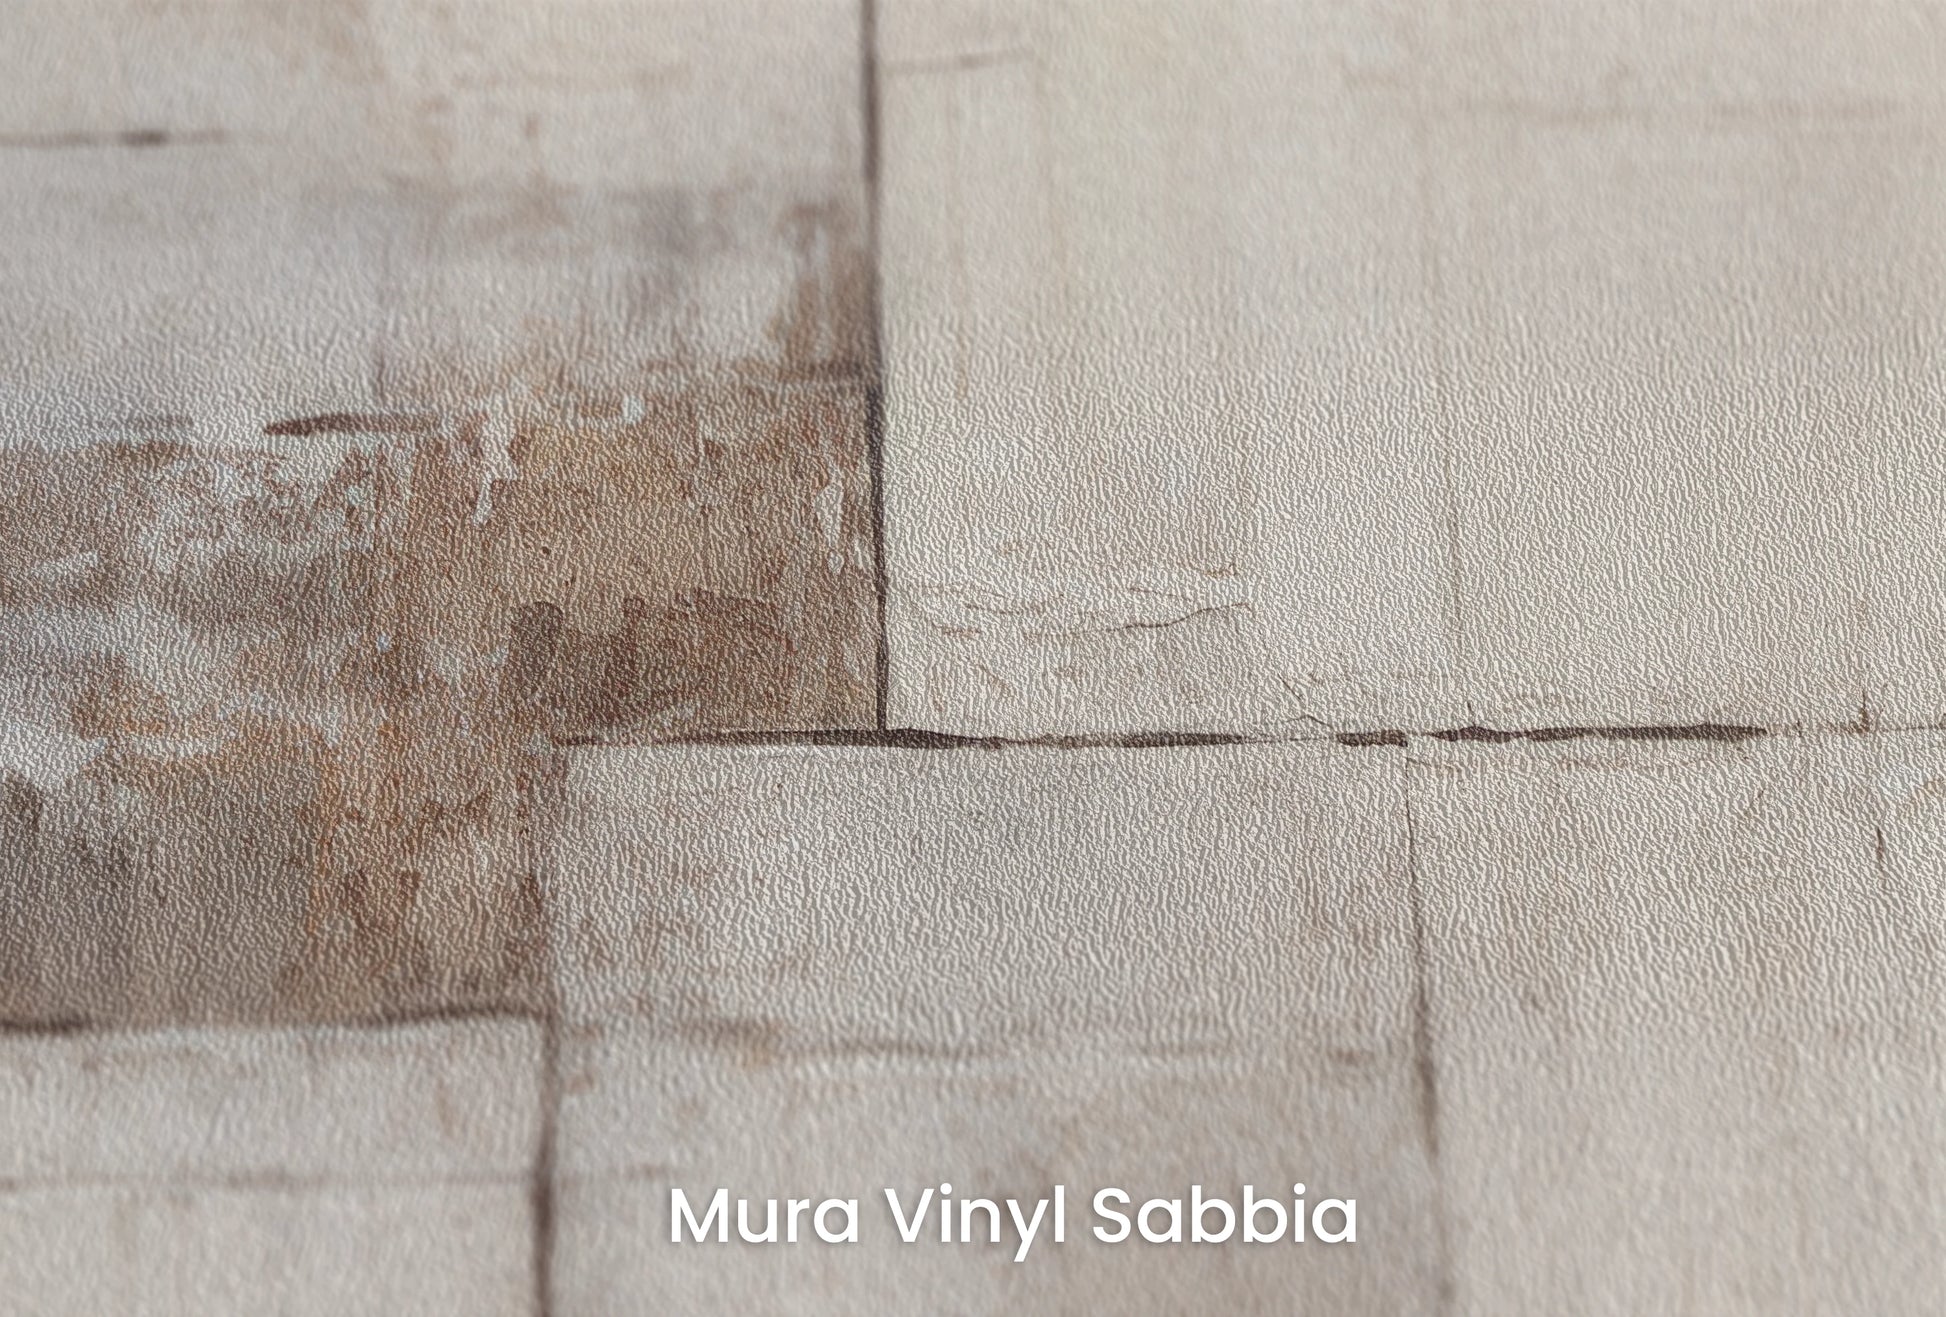 Zbliżenie na artystyczną fototapetę o nazwie Ivory Composition na podłożu Mura Vinyl Sabbia struktura grubego ziarna piasku.